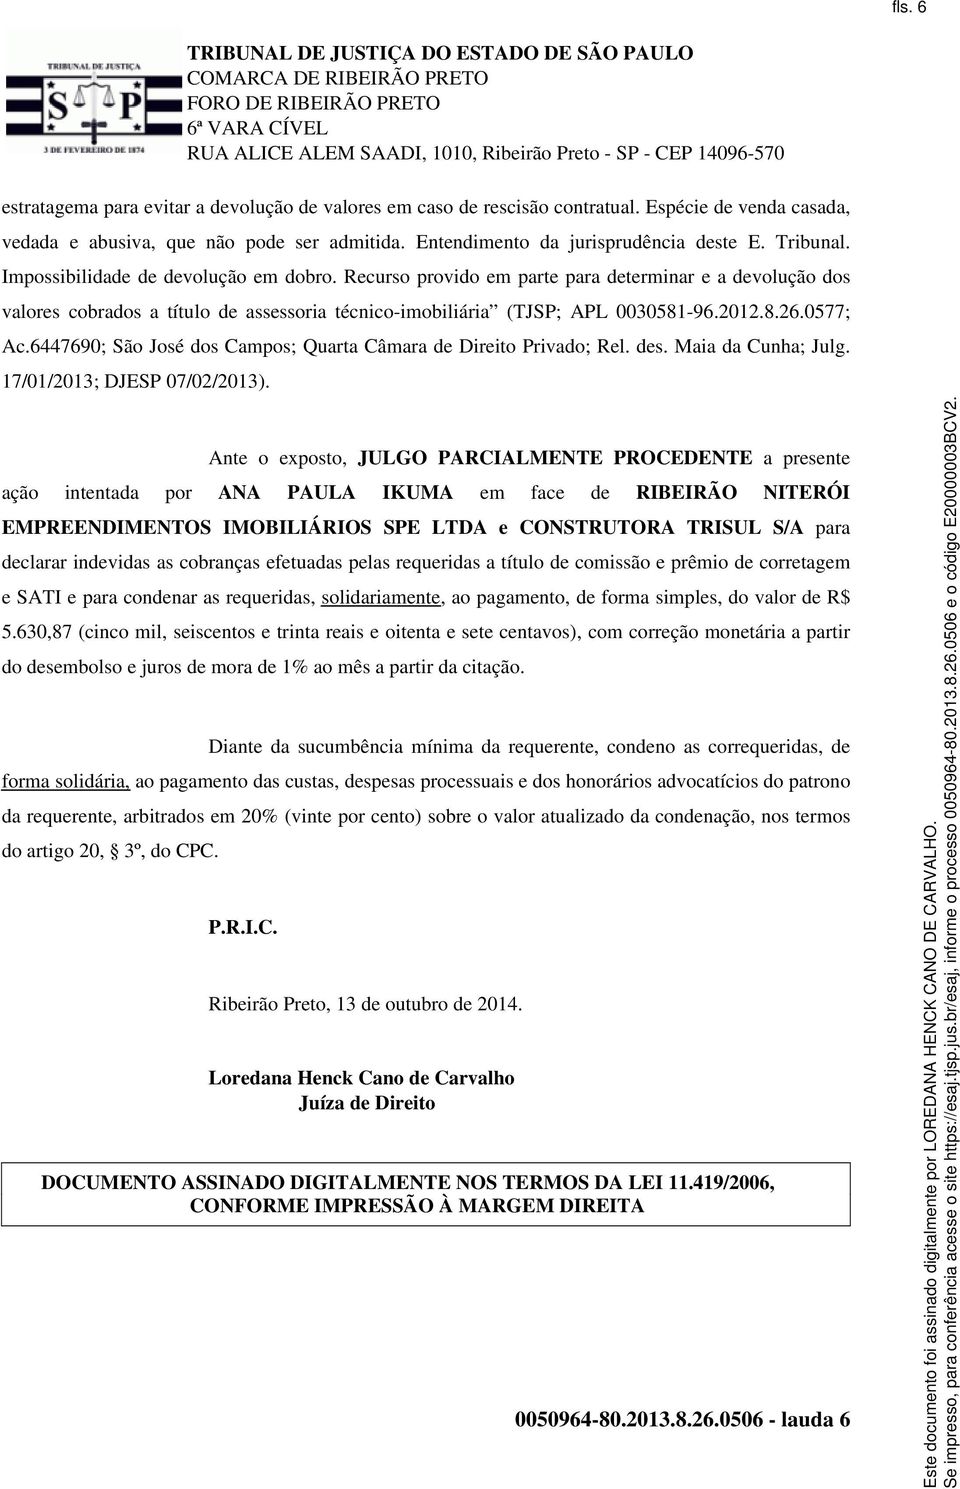 0577; Ac.6447690; São José dos Campos; Quarta Câmara de Direito Privado; Rel. des. Maia da Cunha; Julg. 17/01/2013; DJESP 07/02/2013).